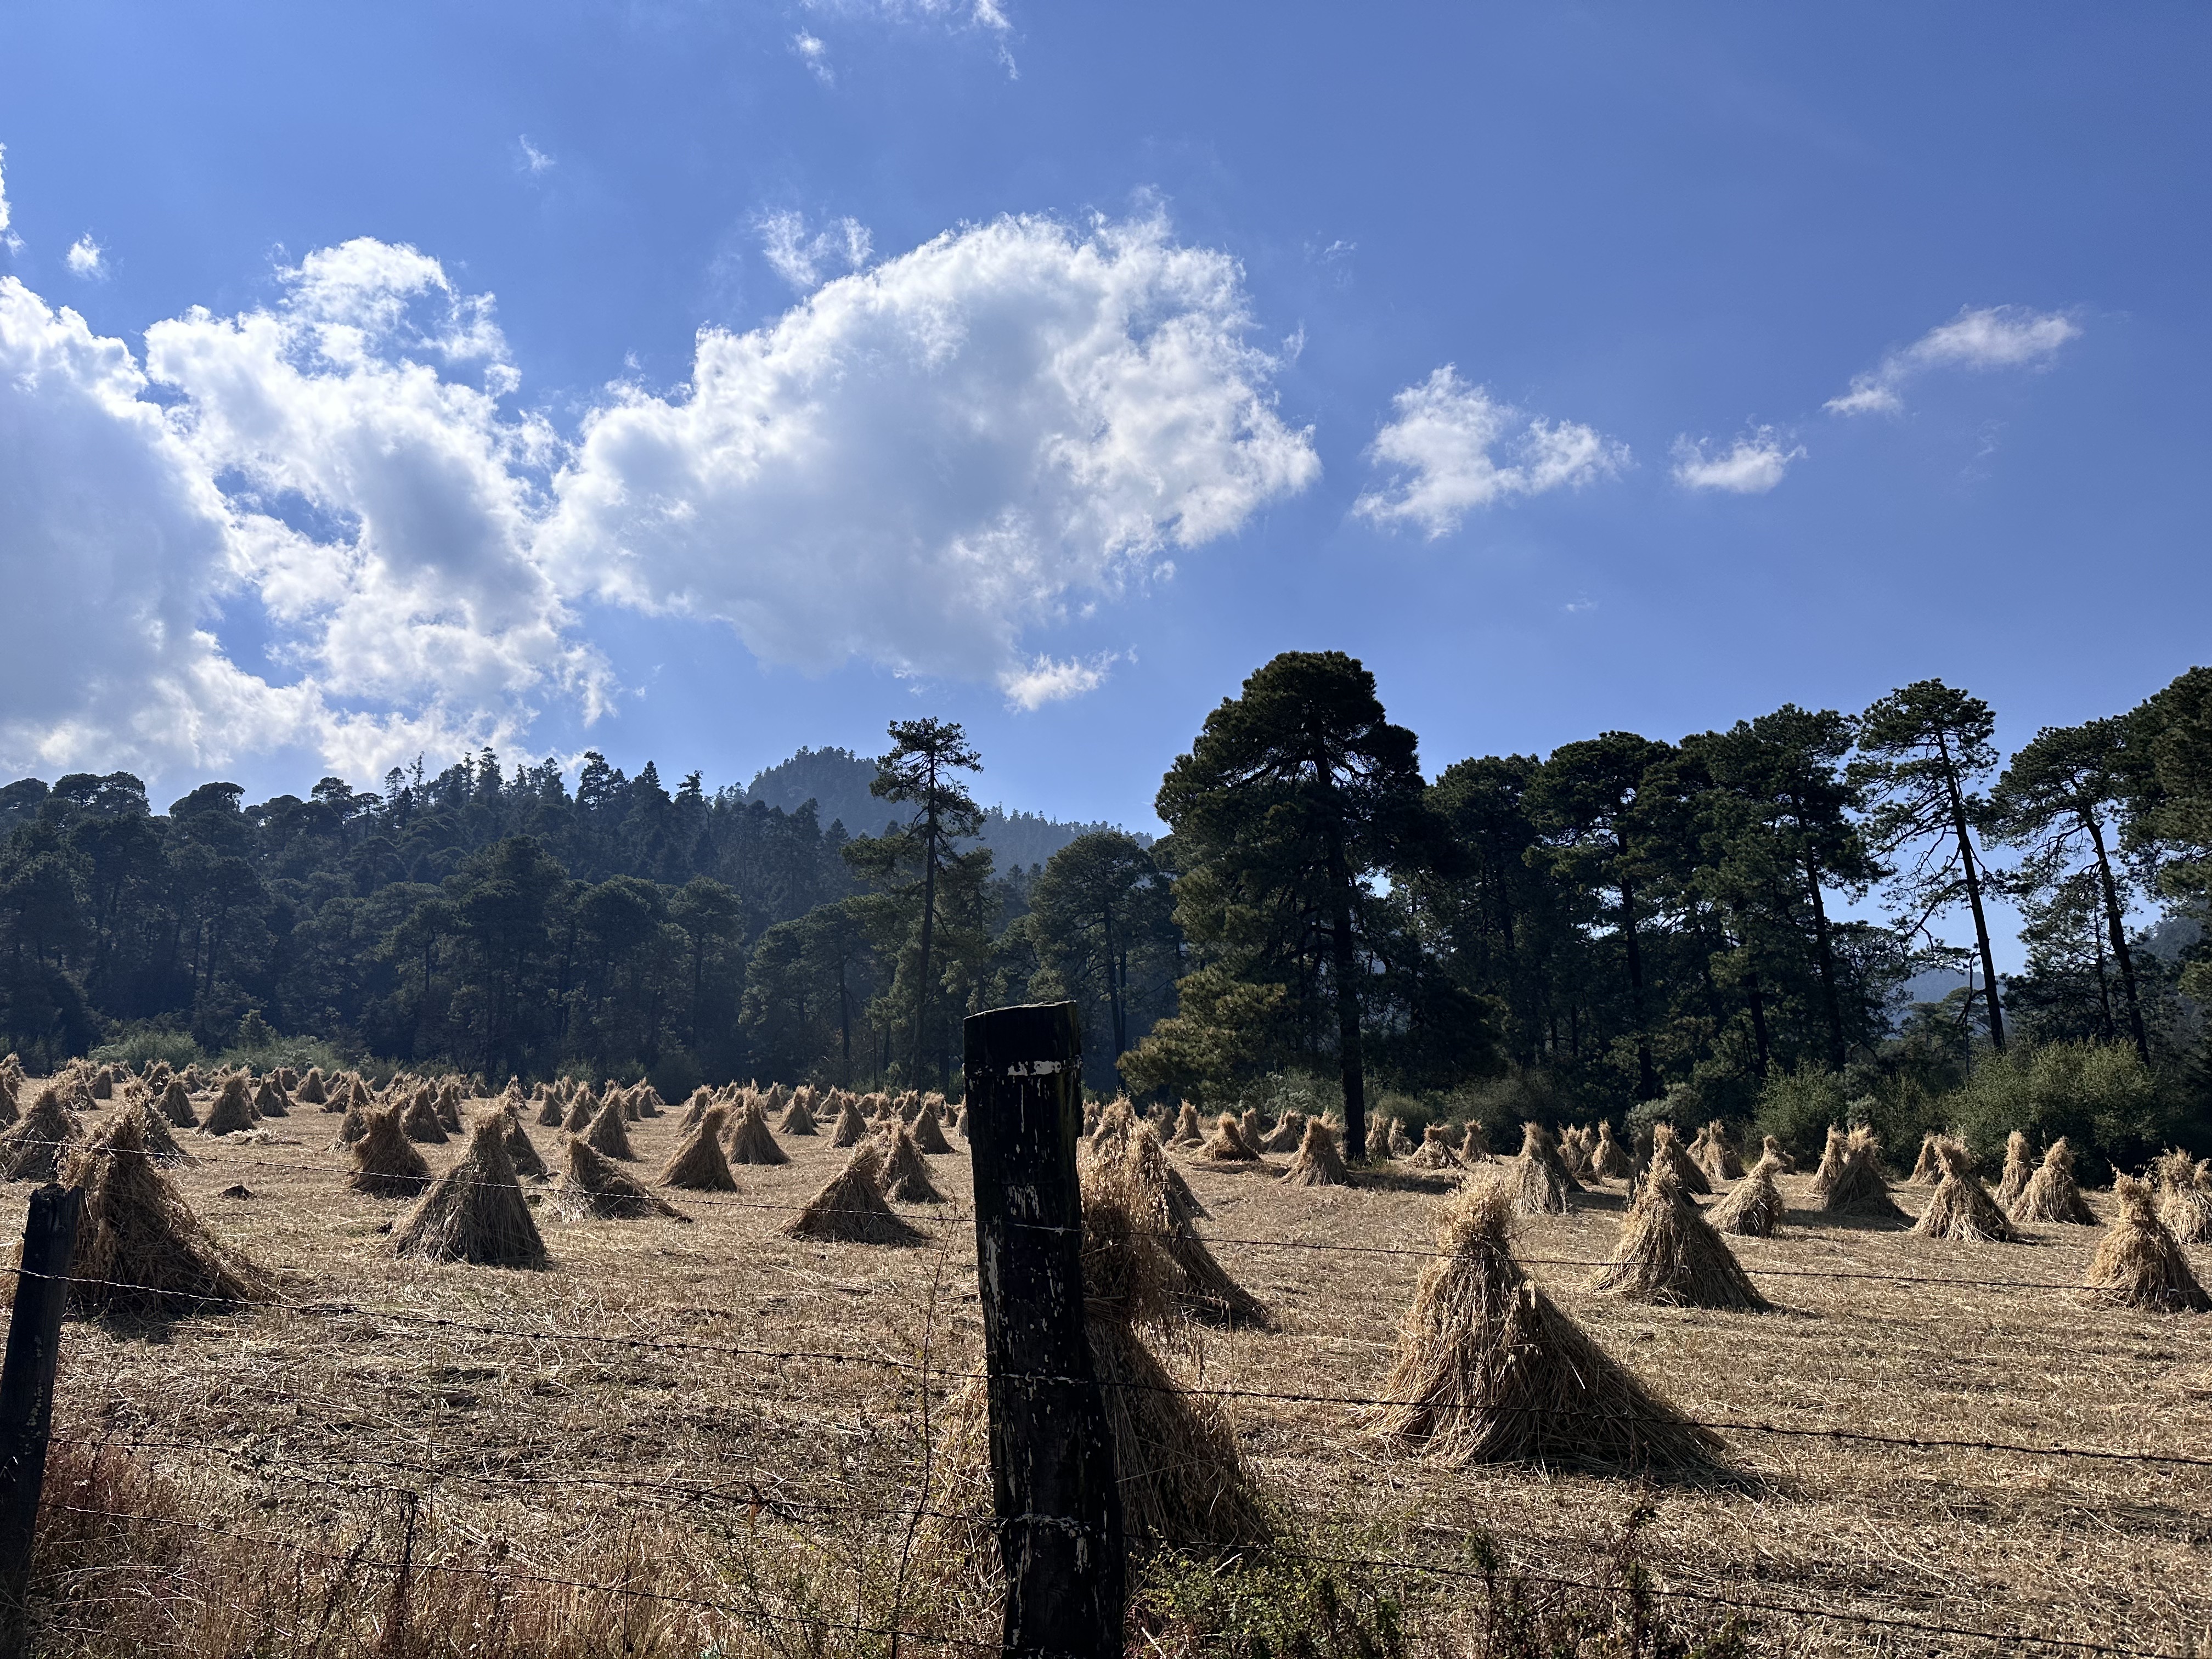 Piles of Hay